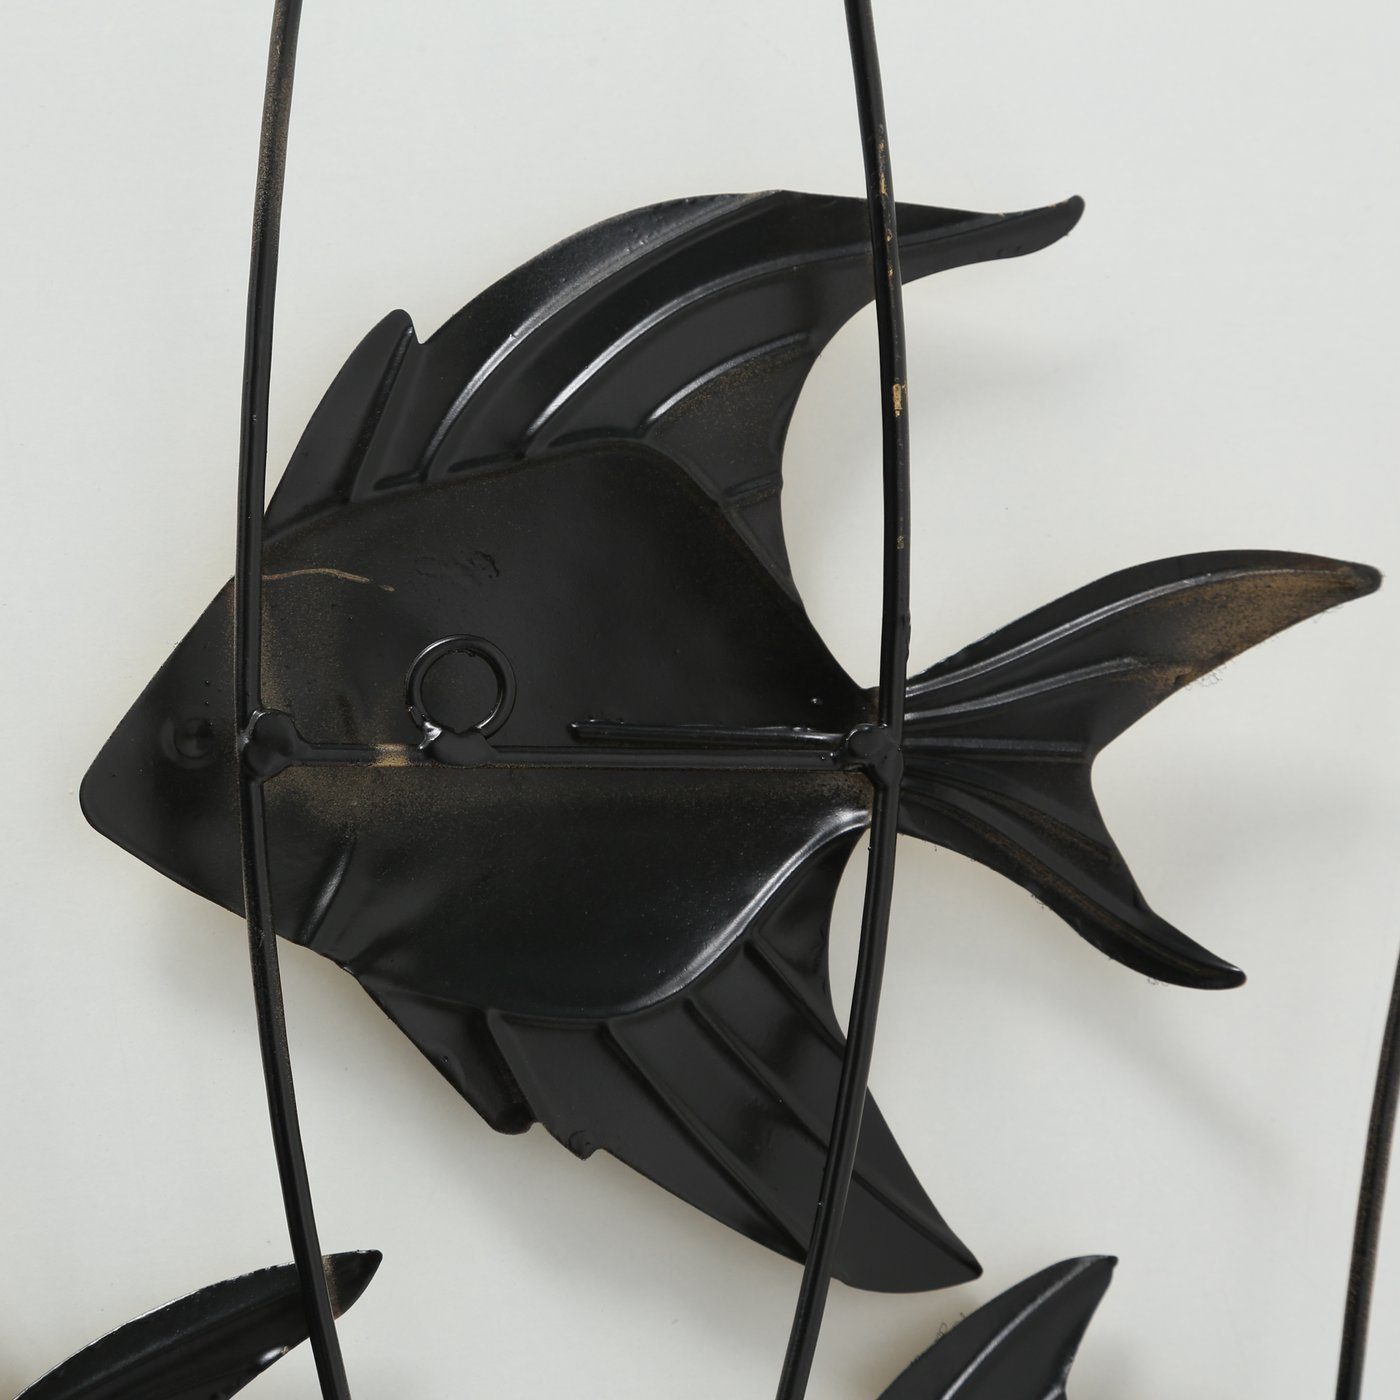 in BOLTZE - "Aquarium" Wanddeko Fische aus Wanddekoobjekt Metall gold